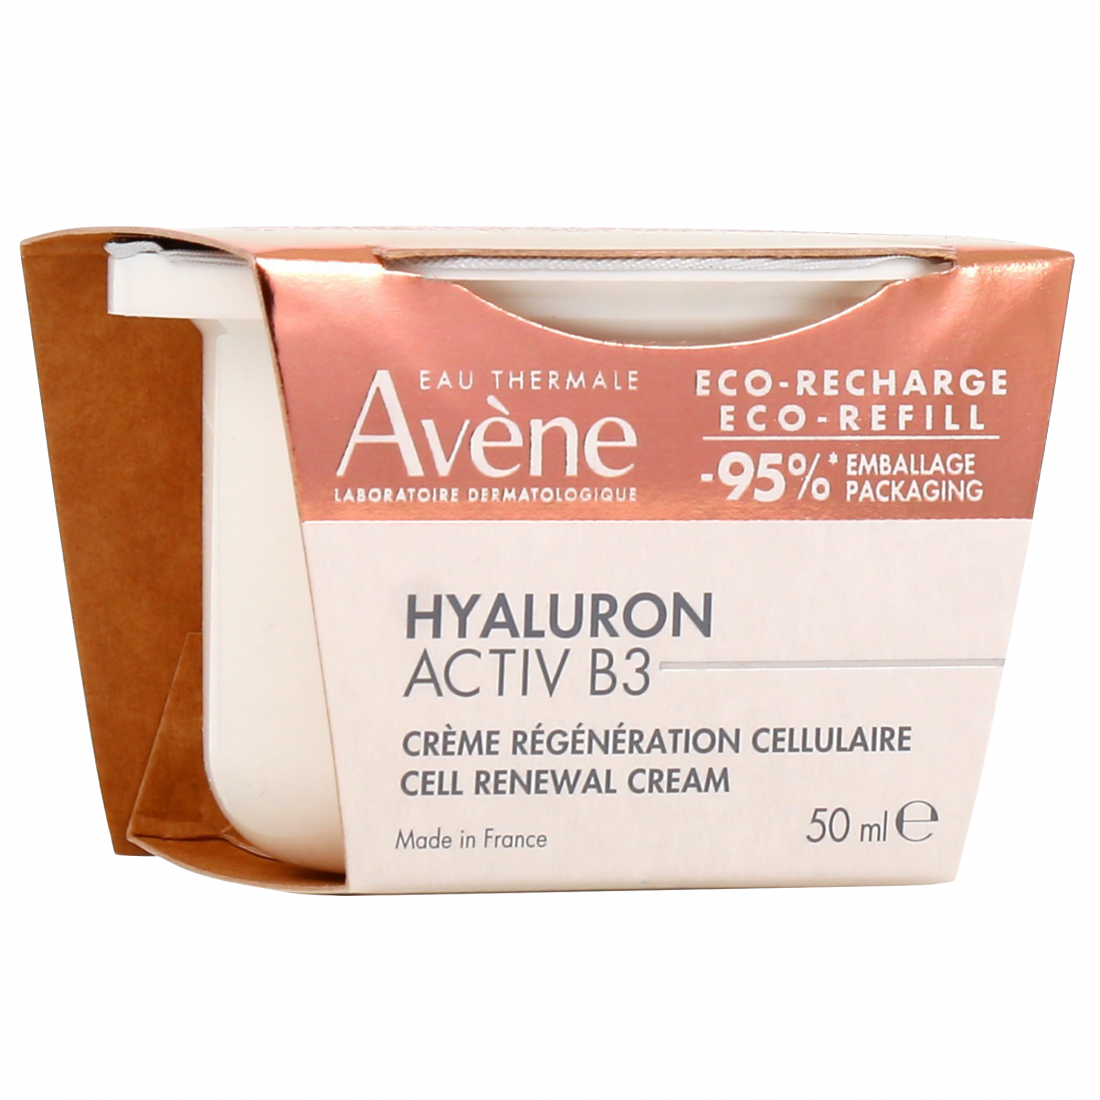 HYALURON ACTIV B3 aqua-gel crème renouvellement cellulaire recharge 50 ml